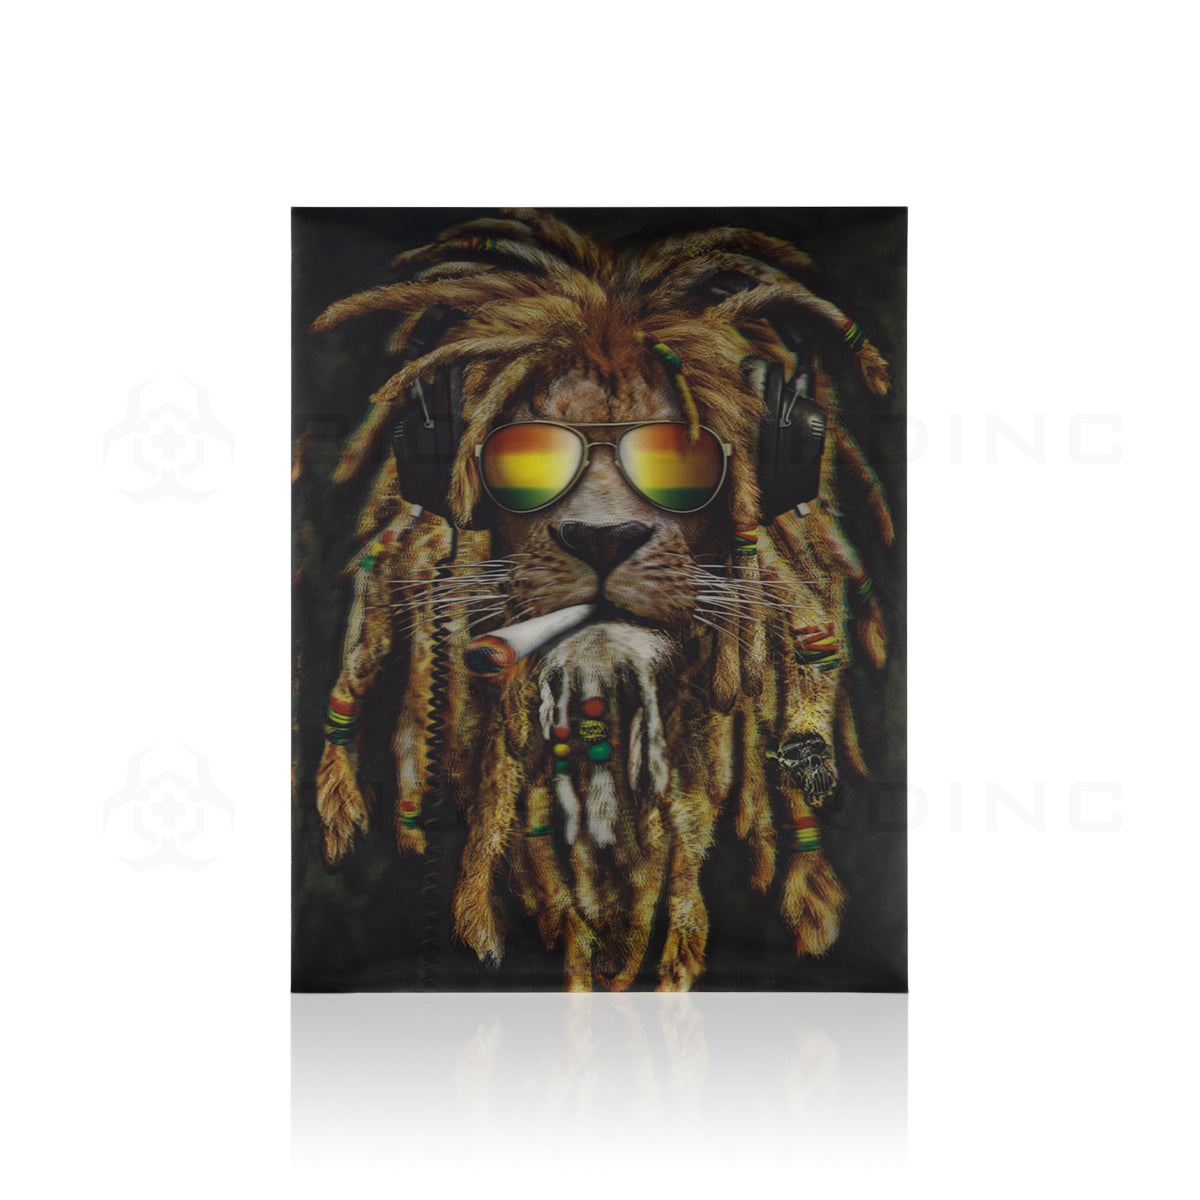 Wall Art | lenticular 3D - Rasta Lion | 16" x 16" Wall Art Biohazard Inc   